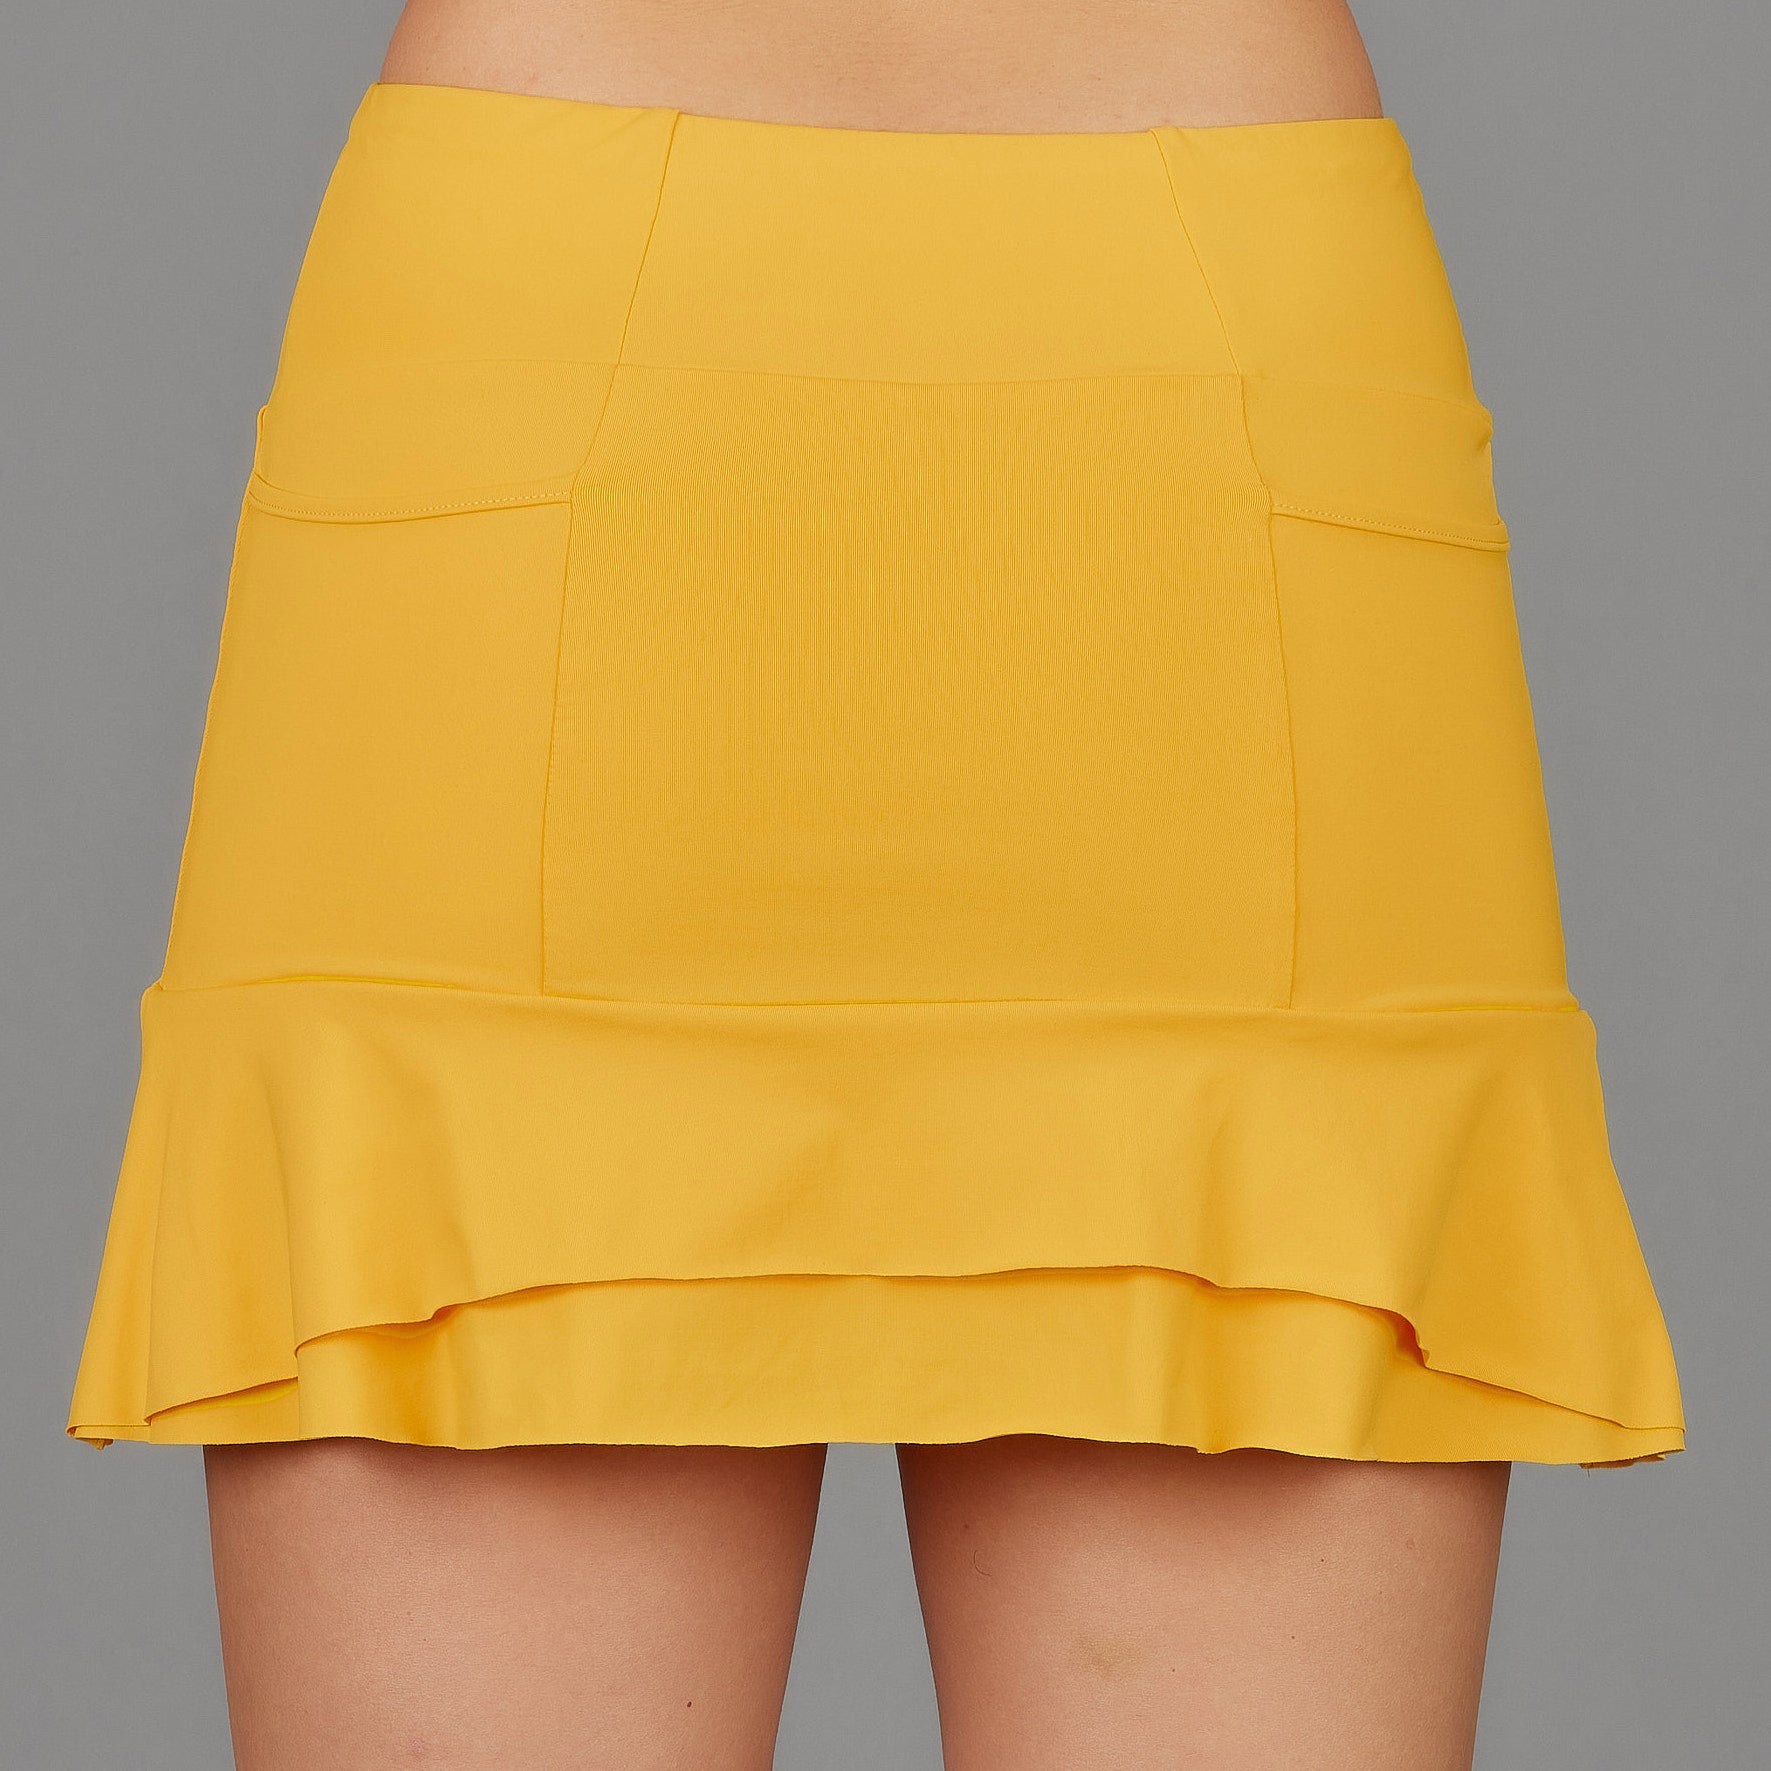 Tangerine Short Skort (yellow)